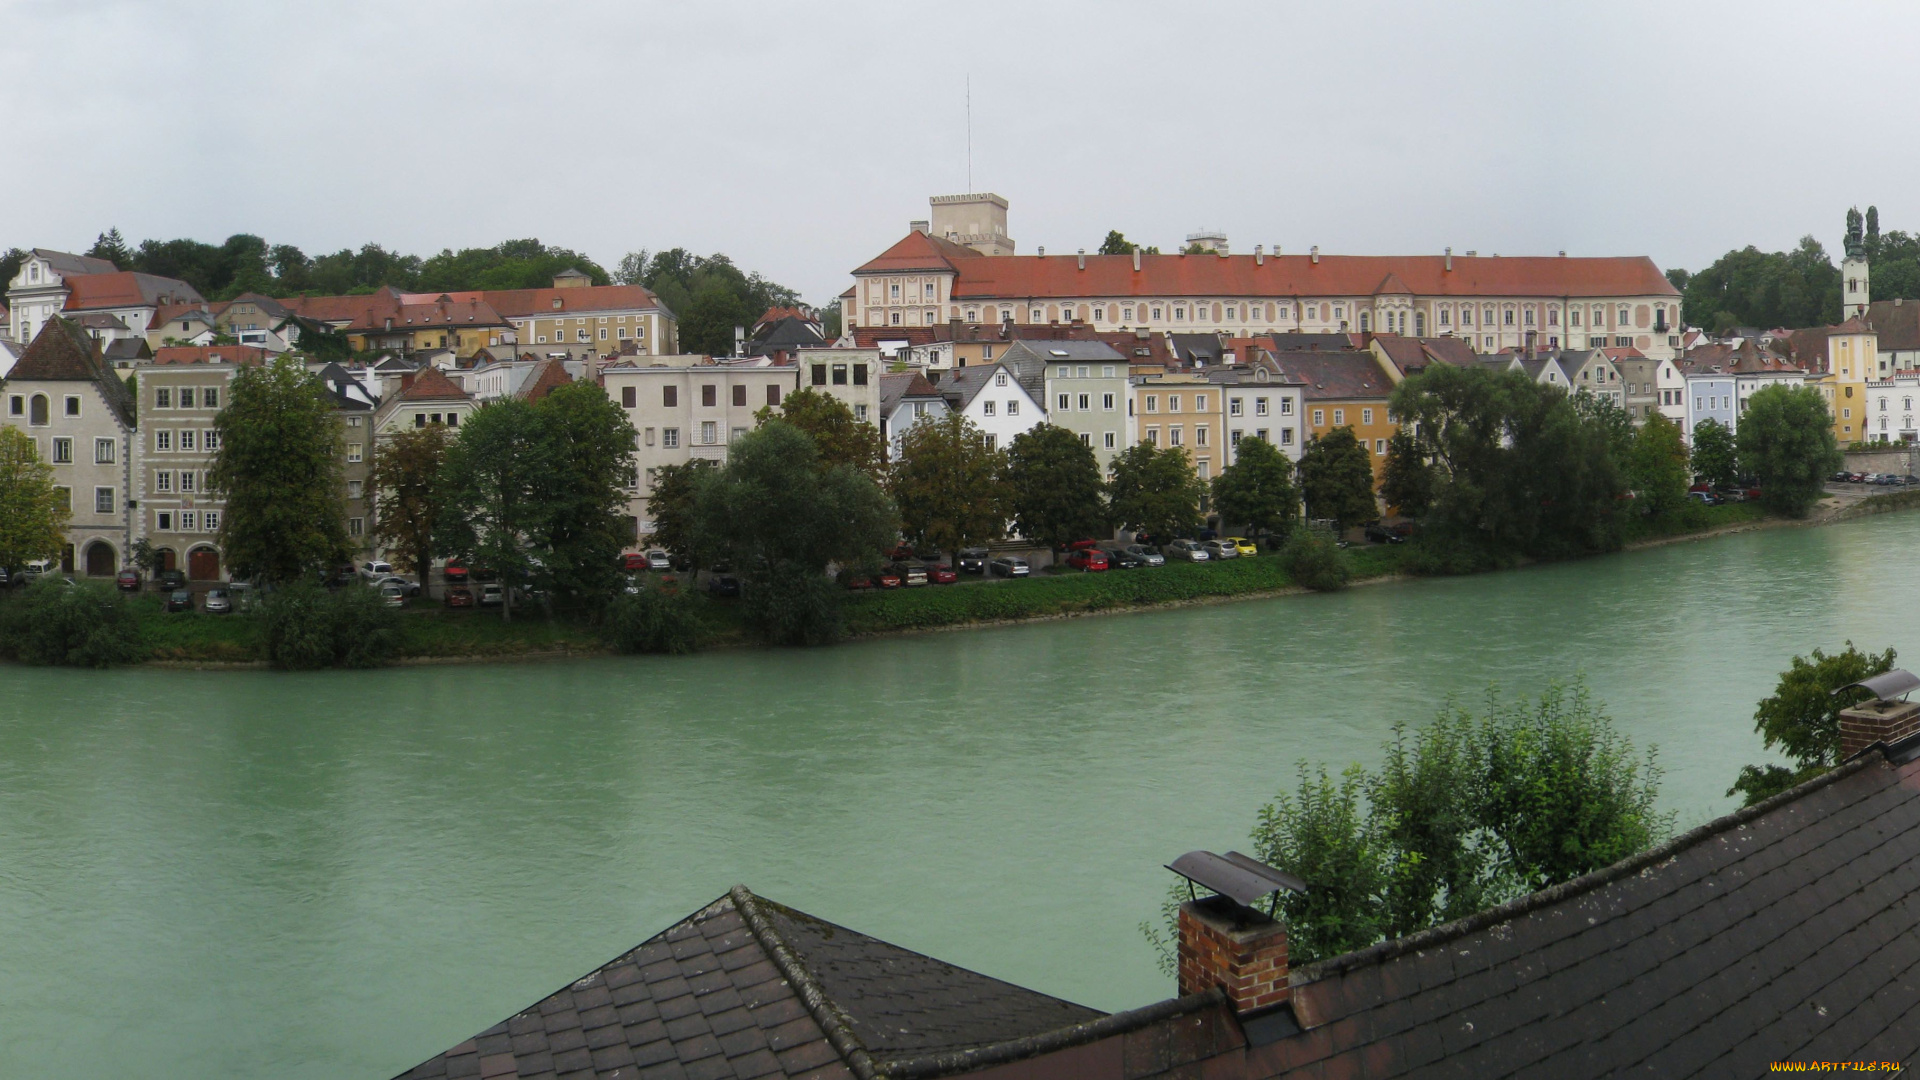 steyr, austria, города, панорамы, набережная, река, здания, деревья